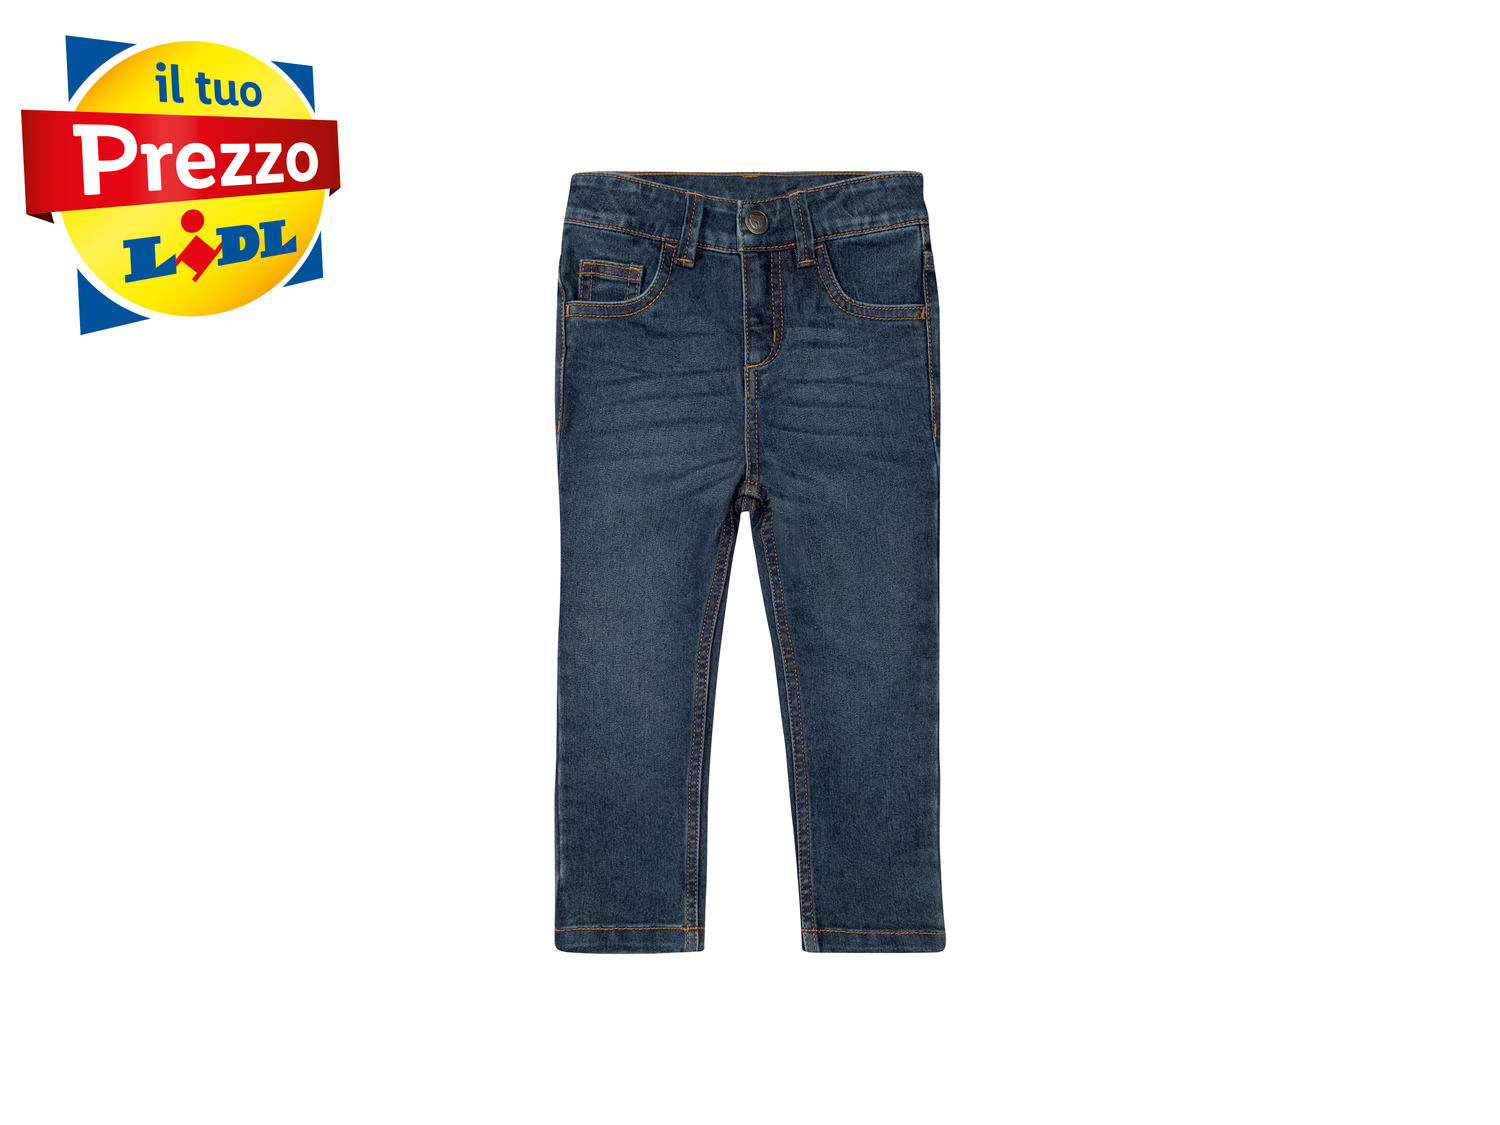 Jeans da bambino Lupilu, prezzo 8.99 &#8364; 
Misure: 1-6 anni
Taglie disponibili

Caratteristiche

- ...